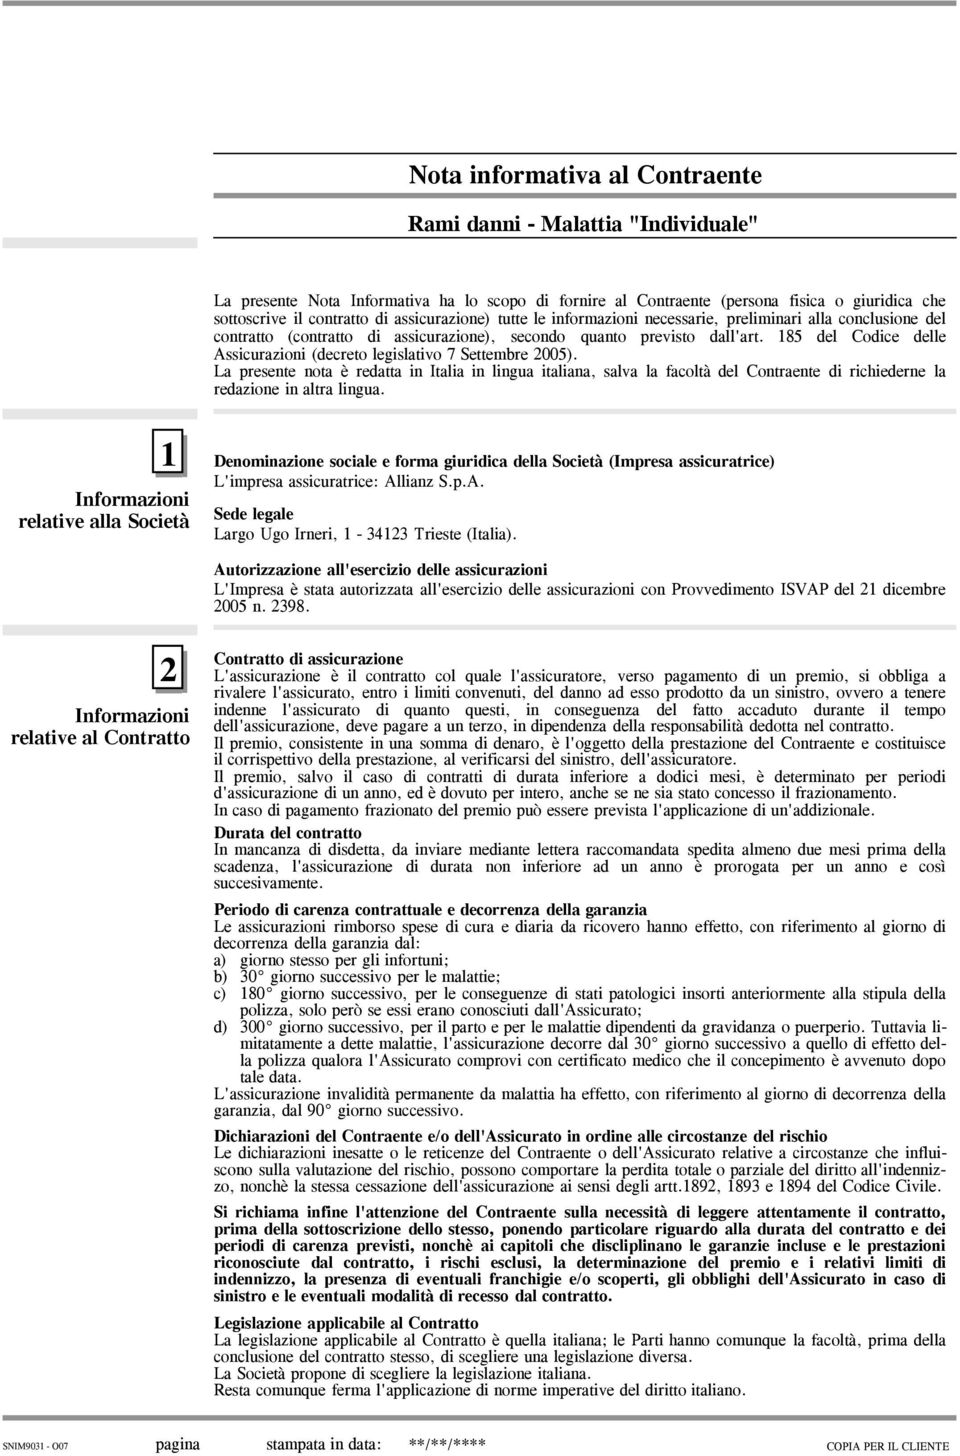 185 del Codice delle Assicurazioni (decreto legislativo 7 Settembre 2005).